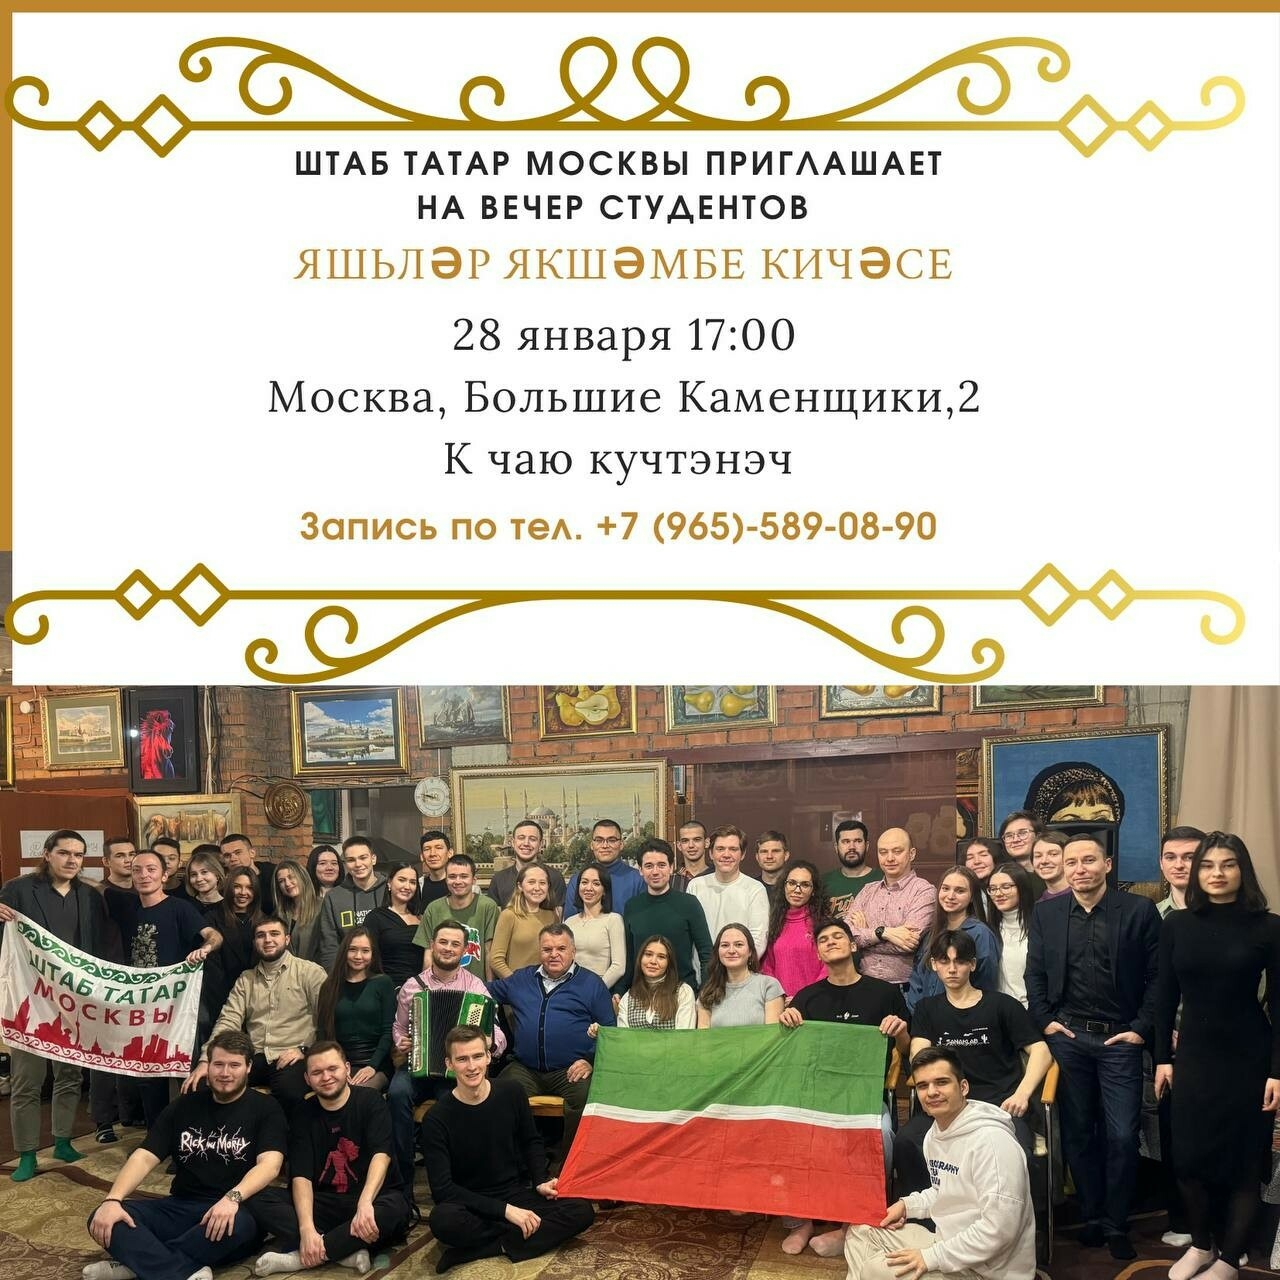 В Штабе татар Москвы 28 января отпразднуют День студента